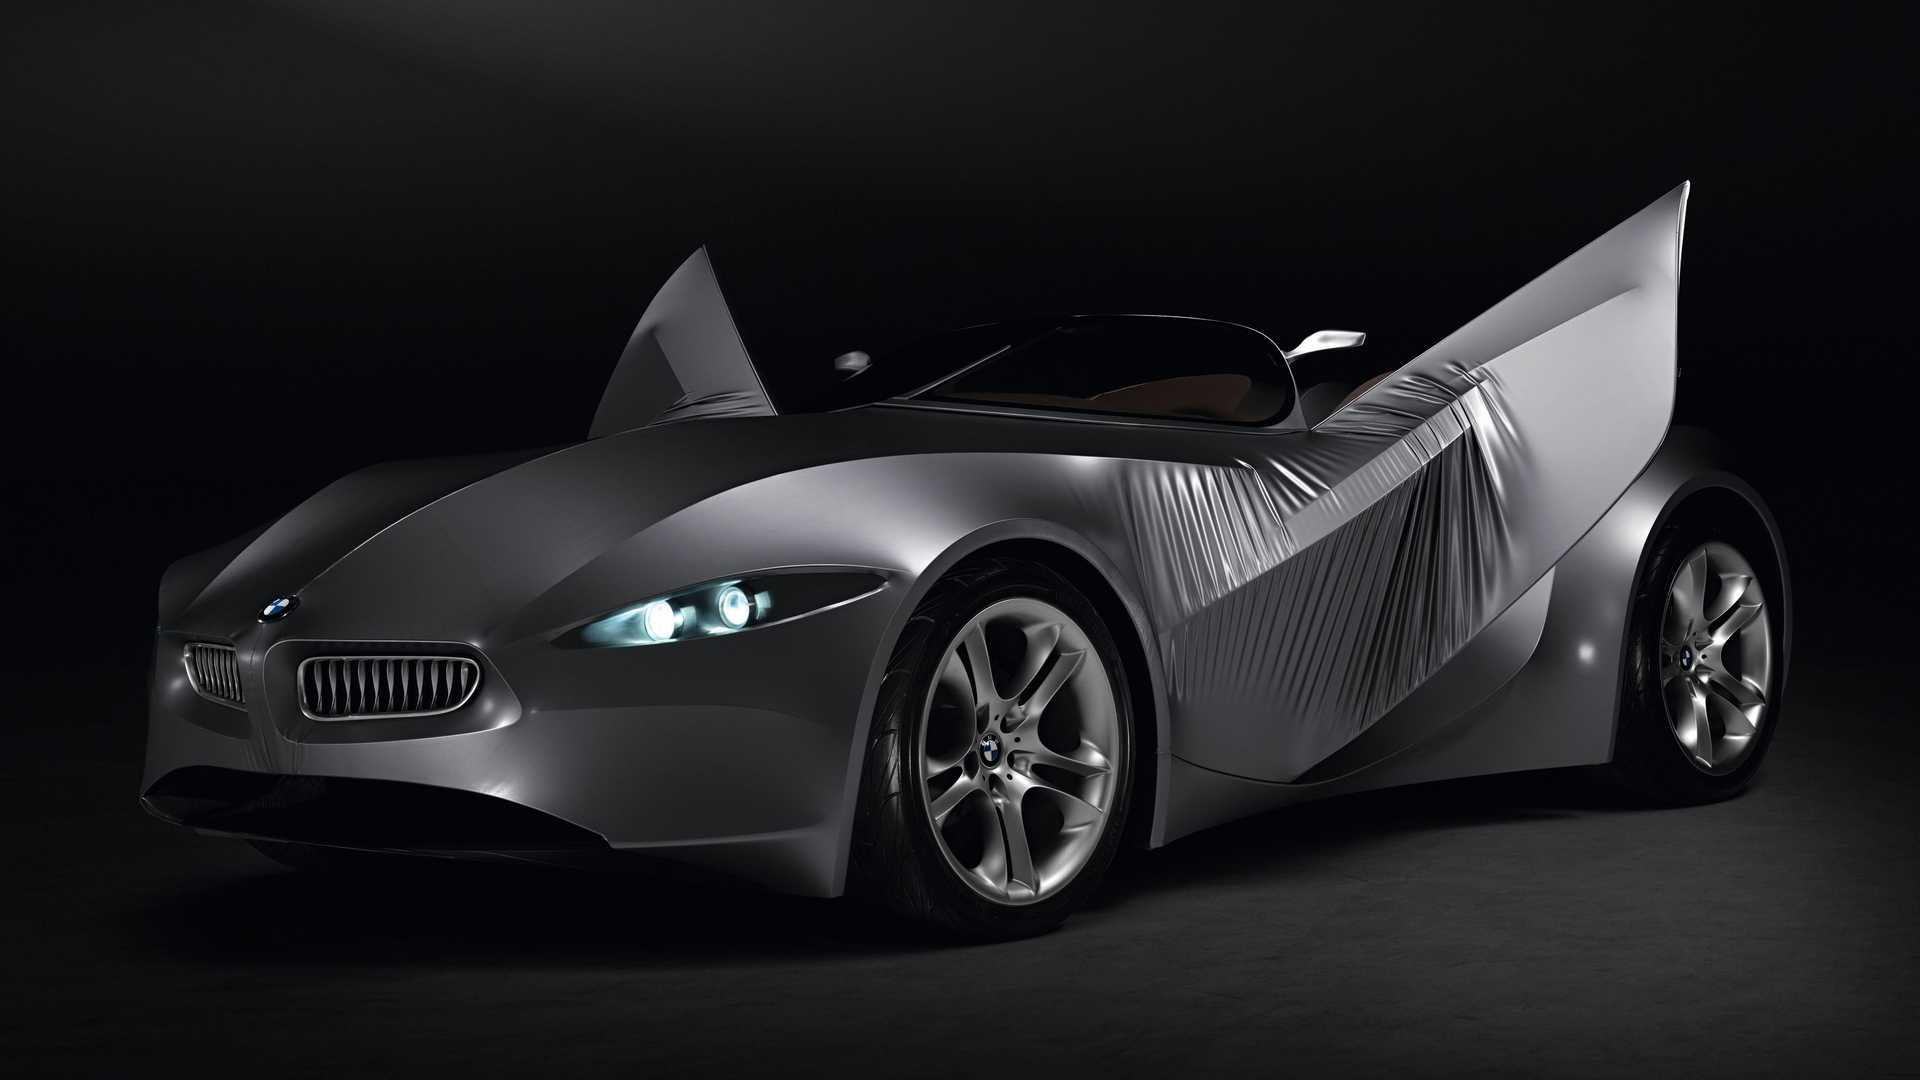 نمای خودروی مفهومی روباز بی ام و گینا / BMW GINA concept convertible با درهای پارچه ای